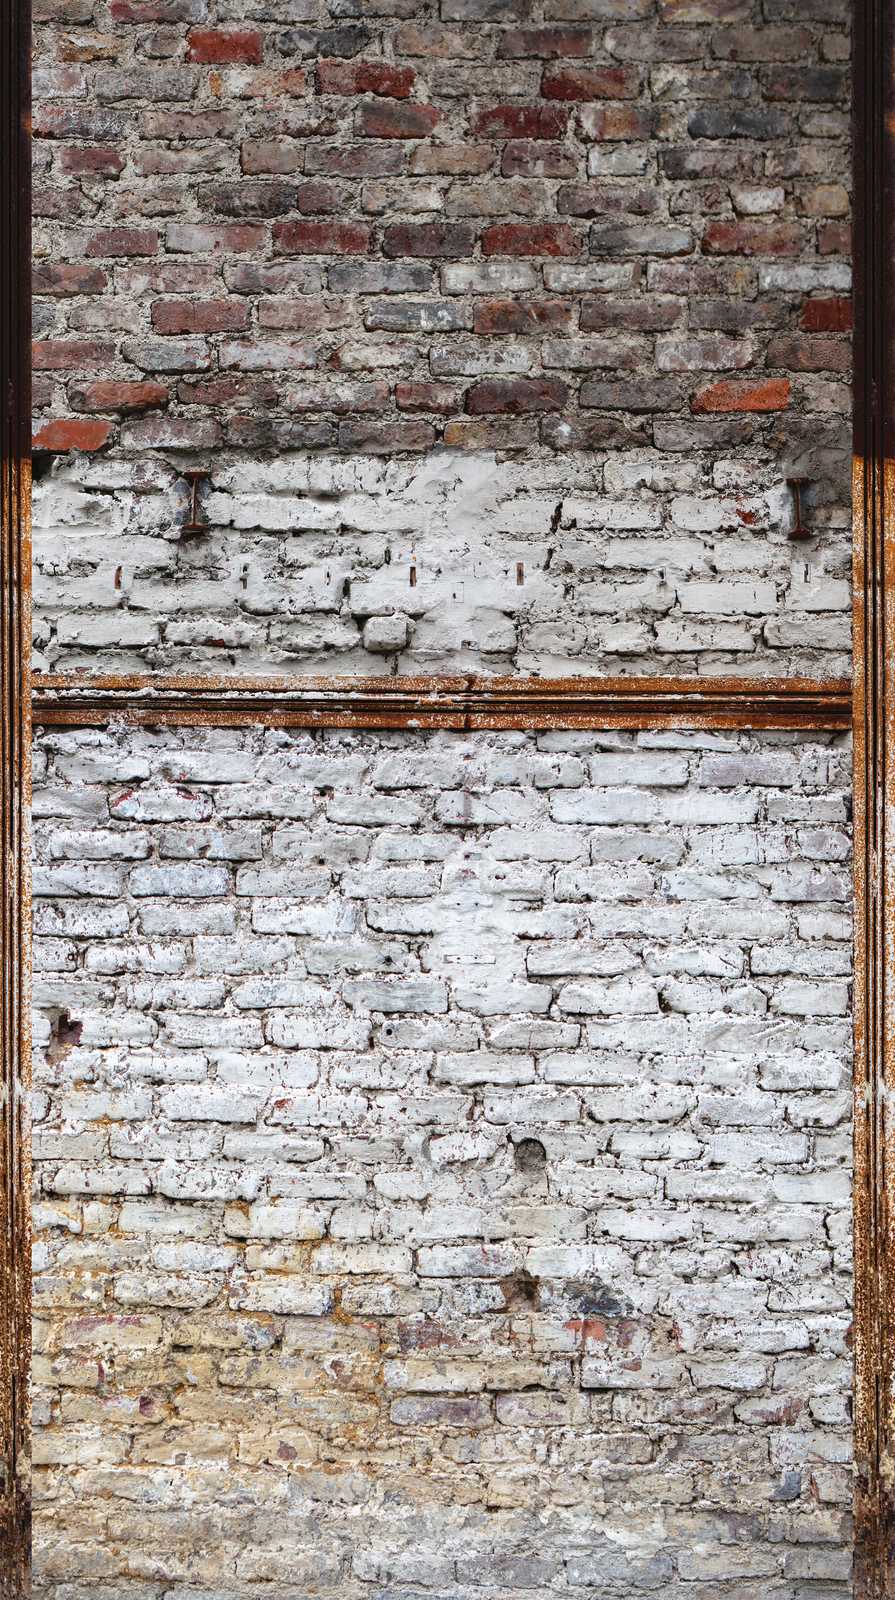             behang nieuwigheid | 3d motief behang industrieel ontwerp stenen muur rustiek
        